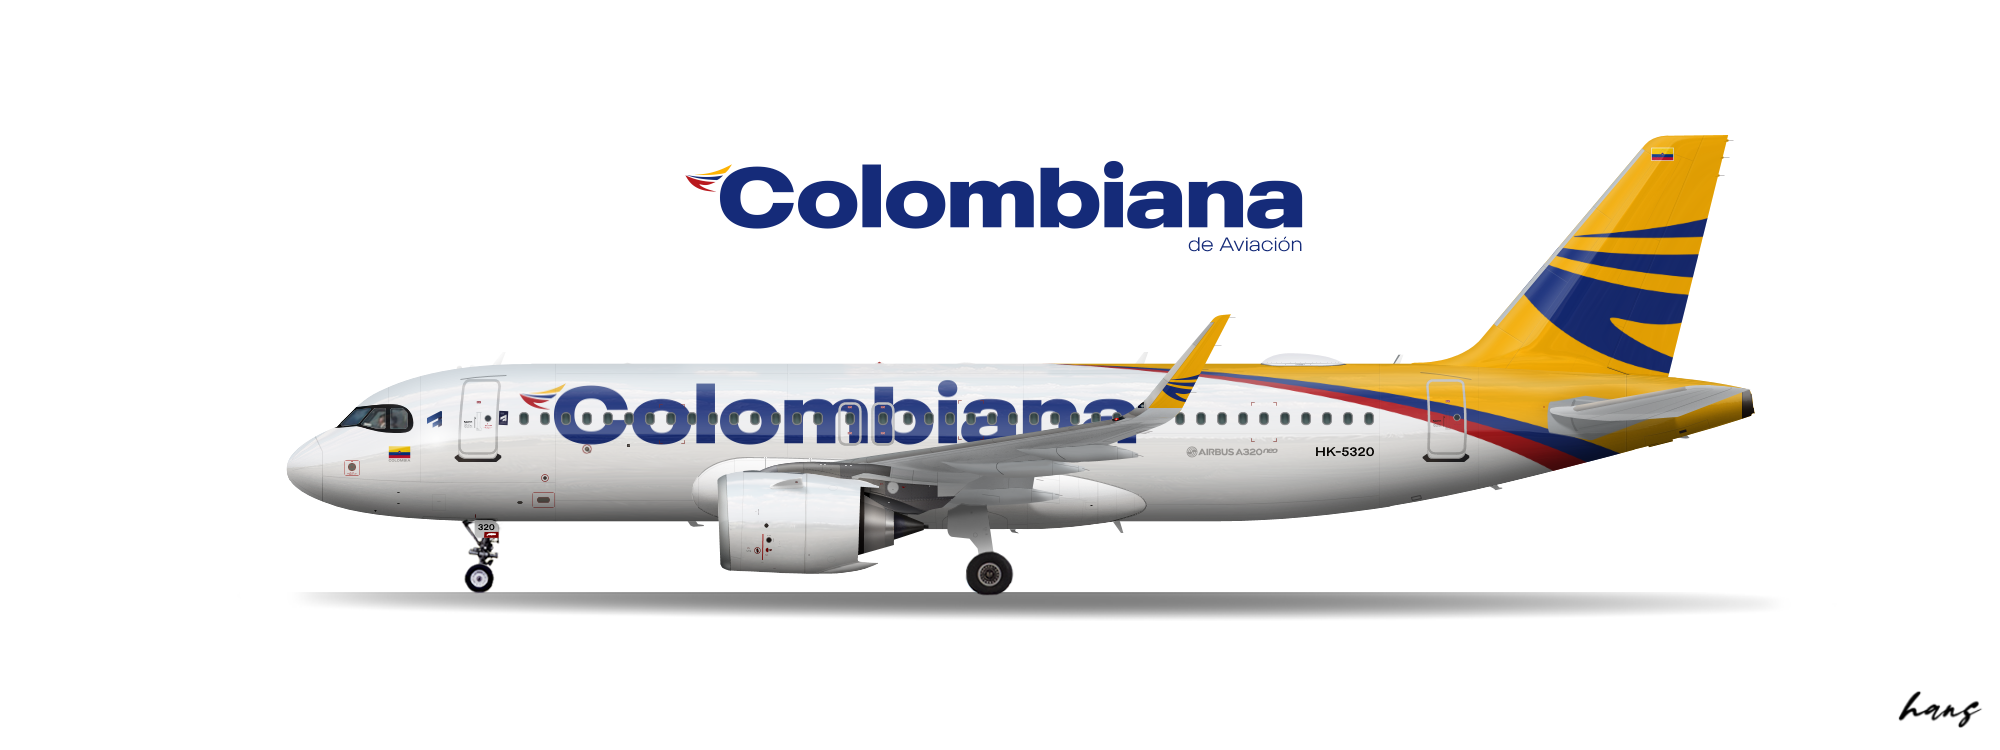 2016 | Colombiana | Airbus A320neo - (OLD) Colombiana de Aviación - Gallery  - Airline Empires